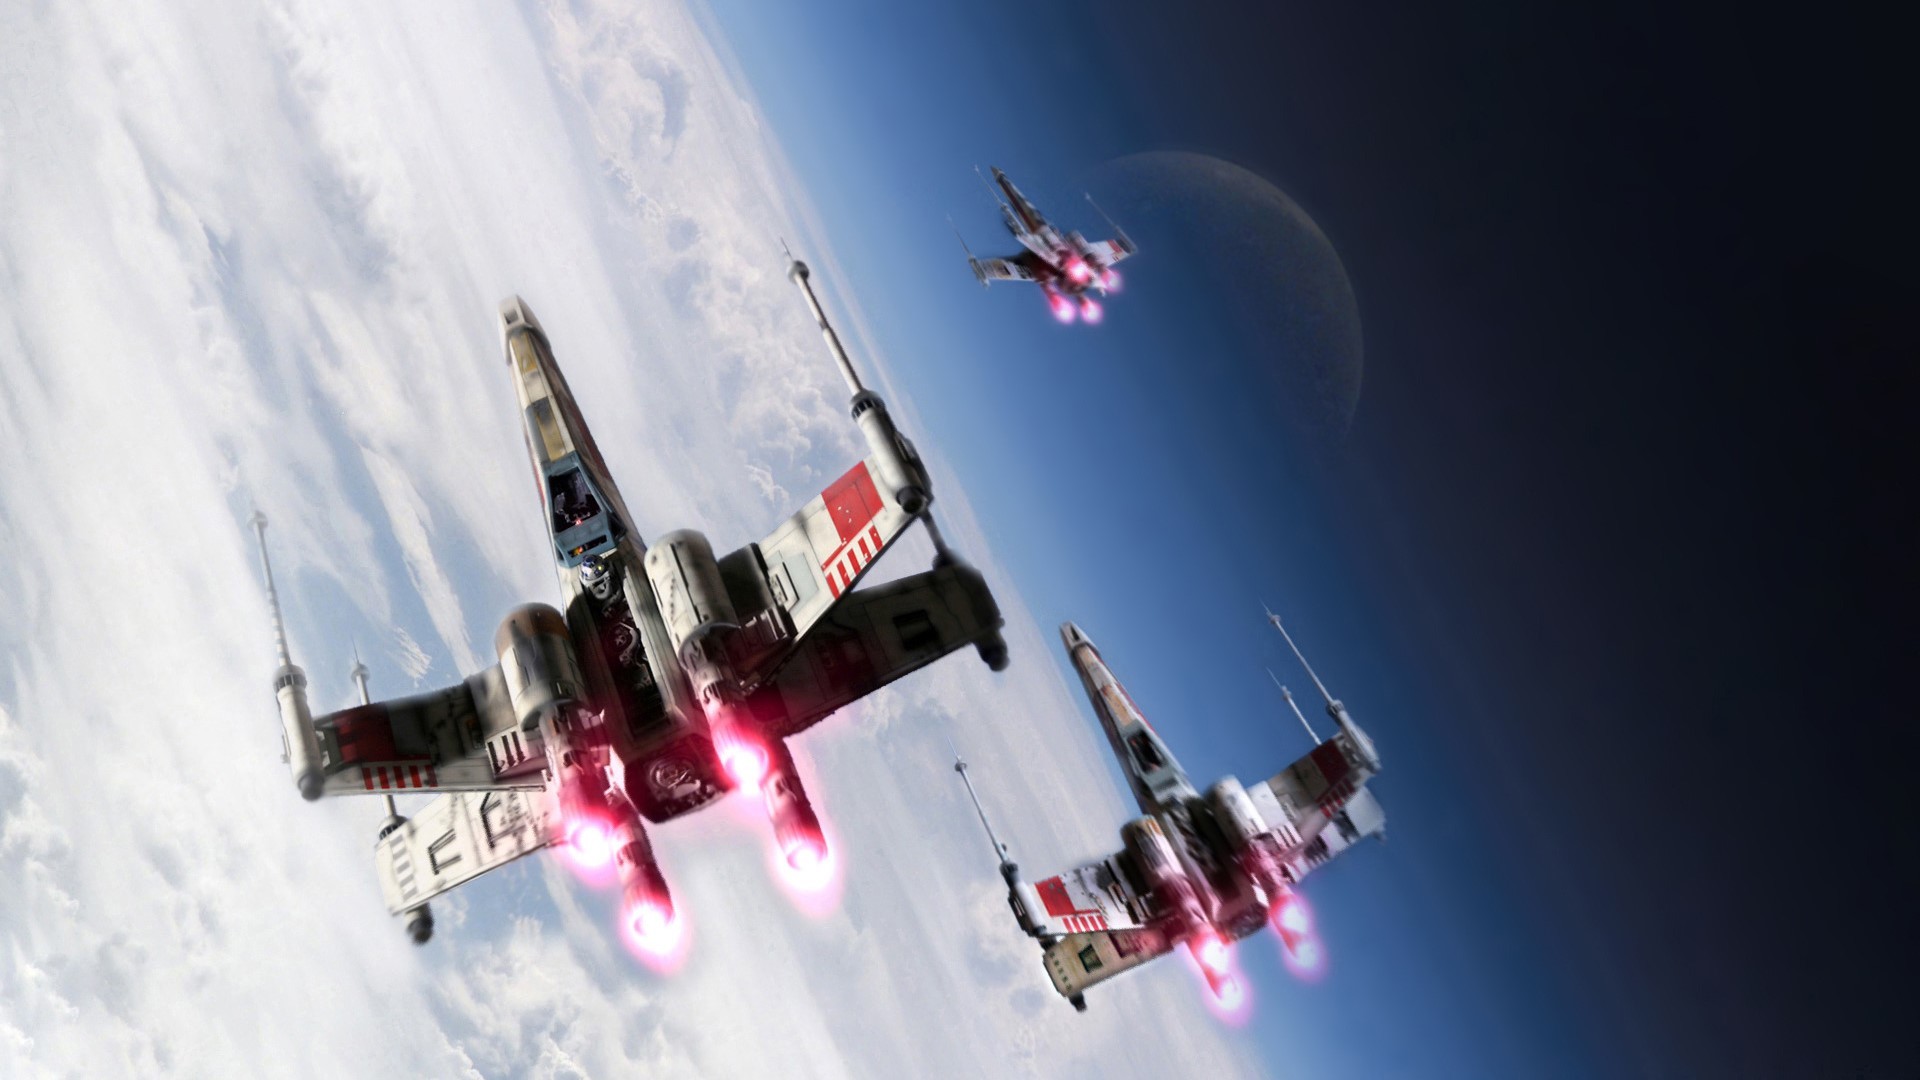 X Wing Star Wars Rebel Alliance Star Wars Ships Science Fiction Wallpaper:1920x1080